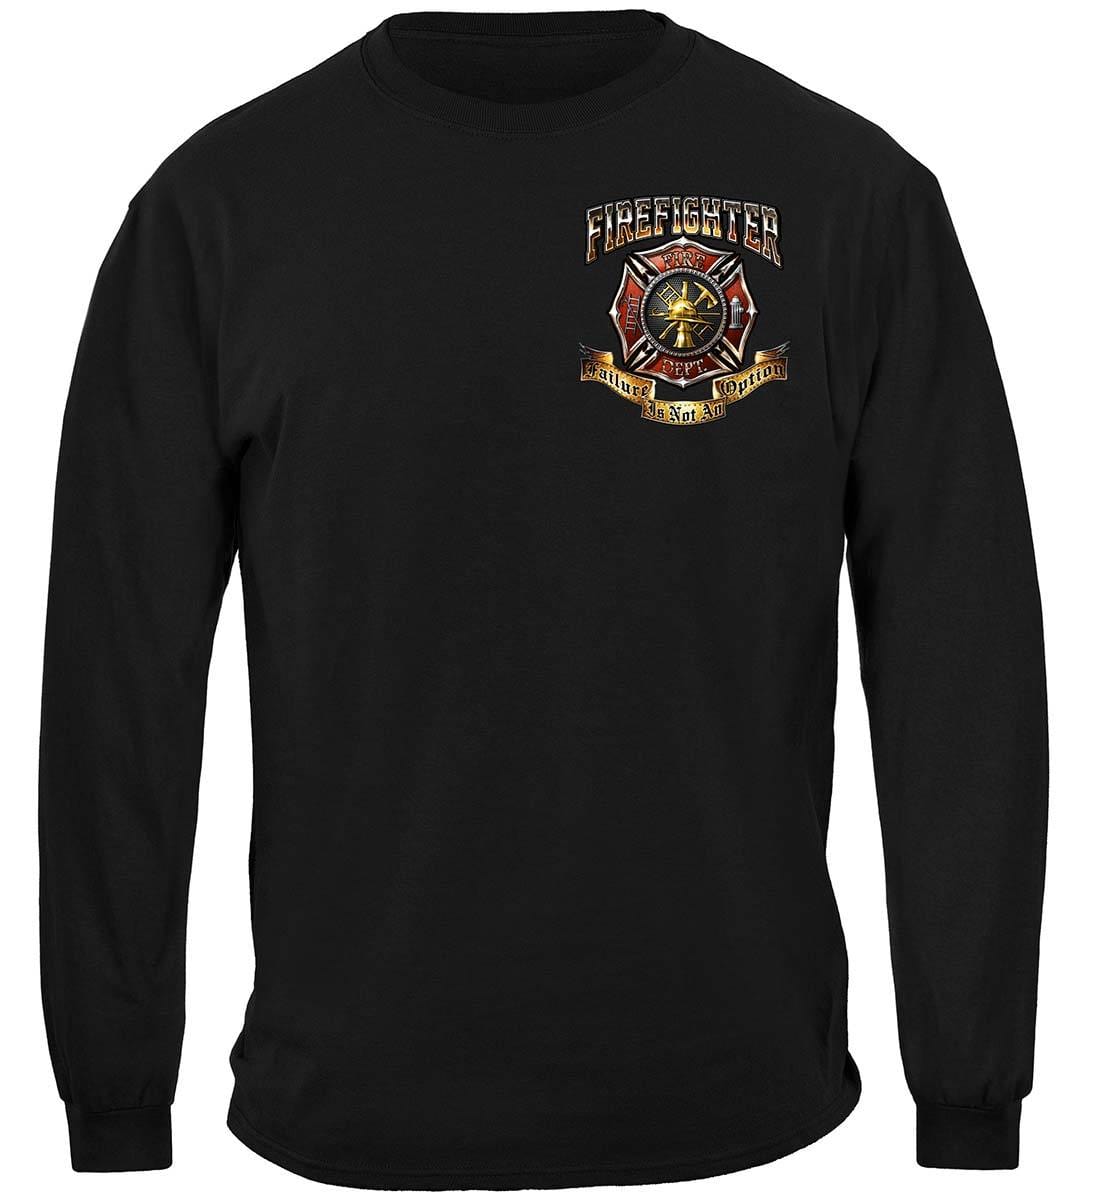 Firefighter Failure Is Not An Option Premium T-Shirt